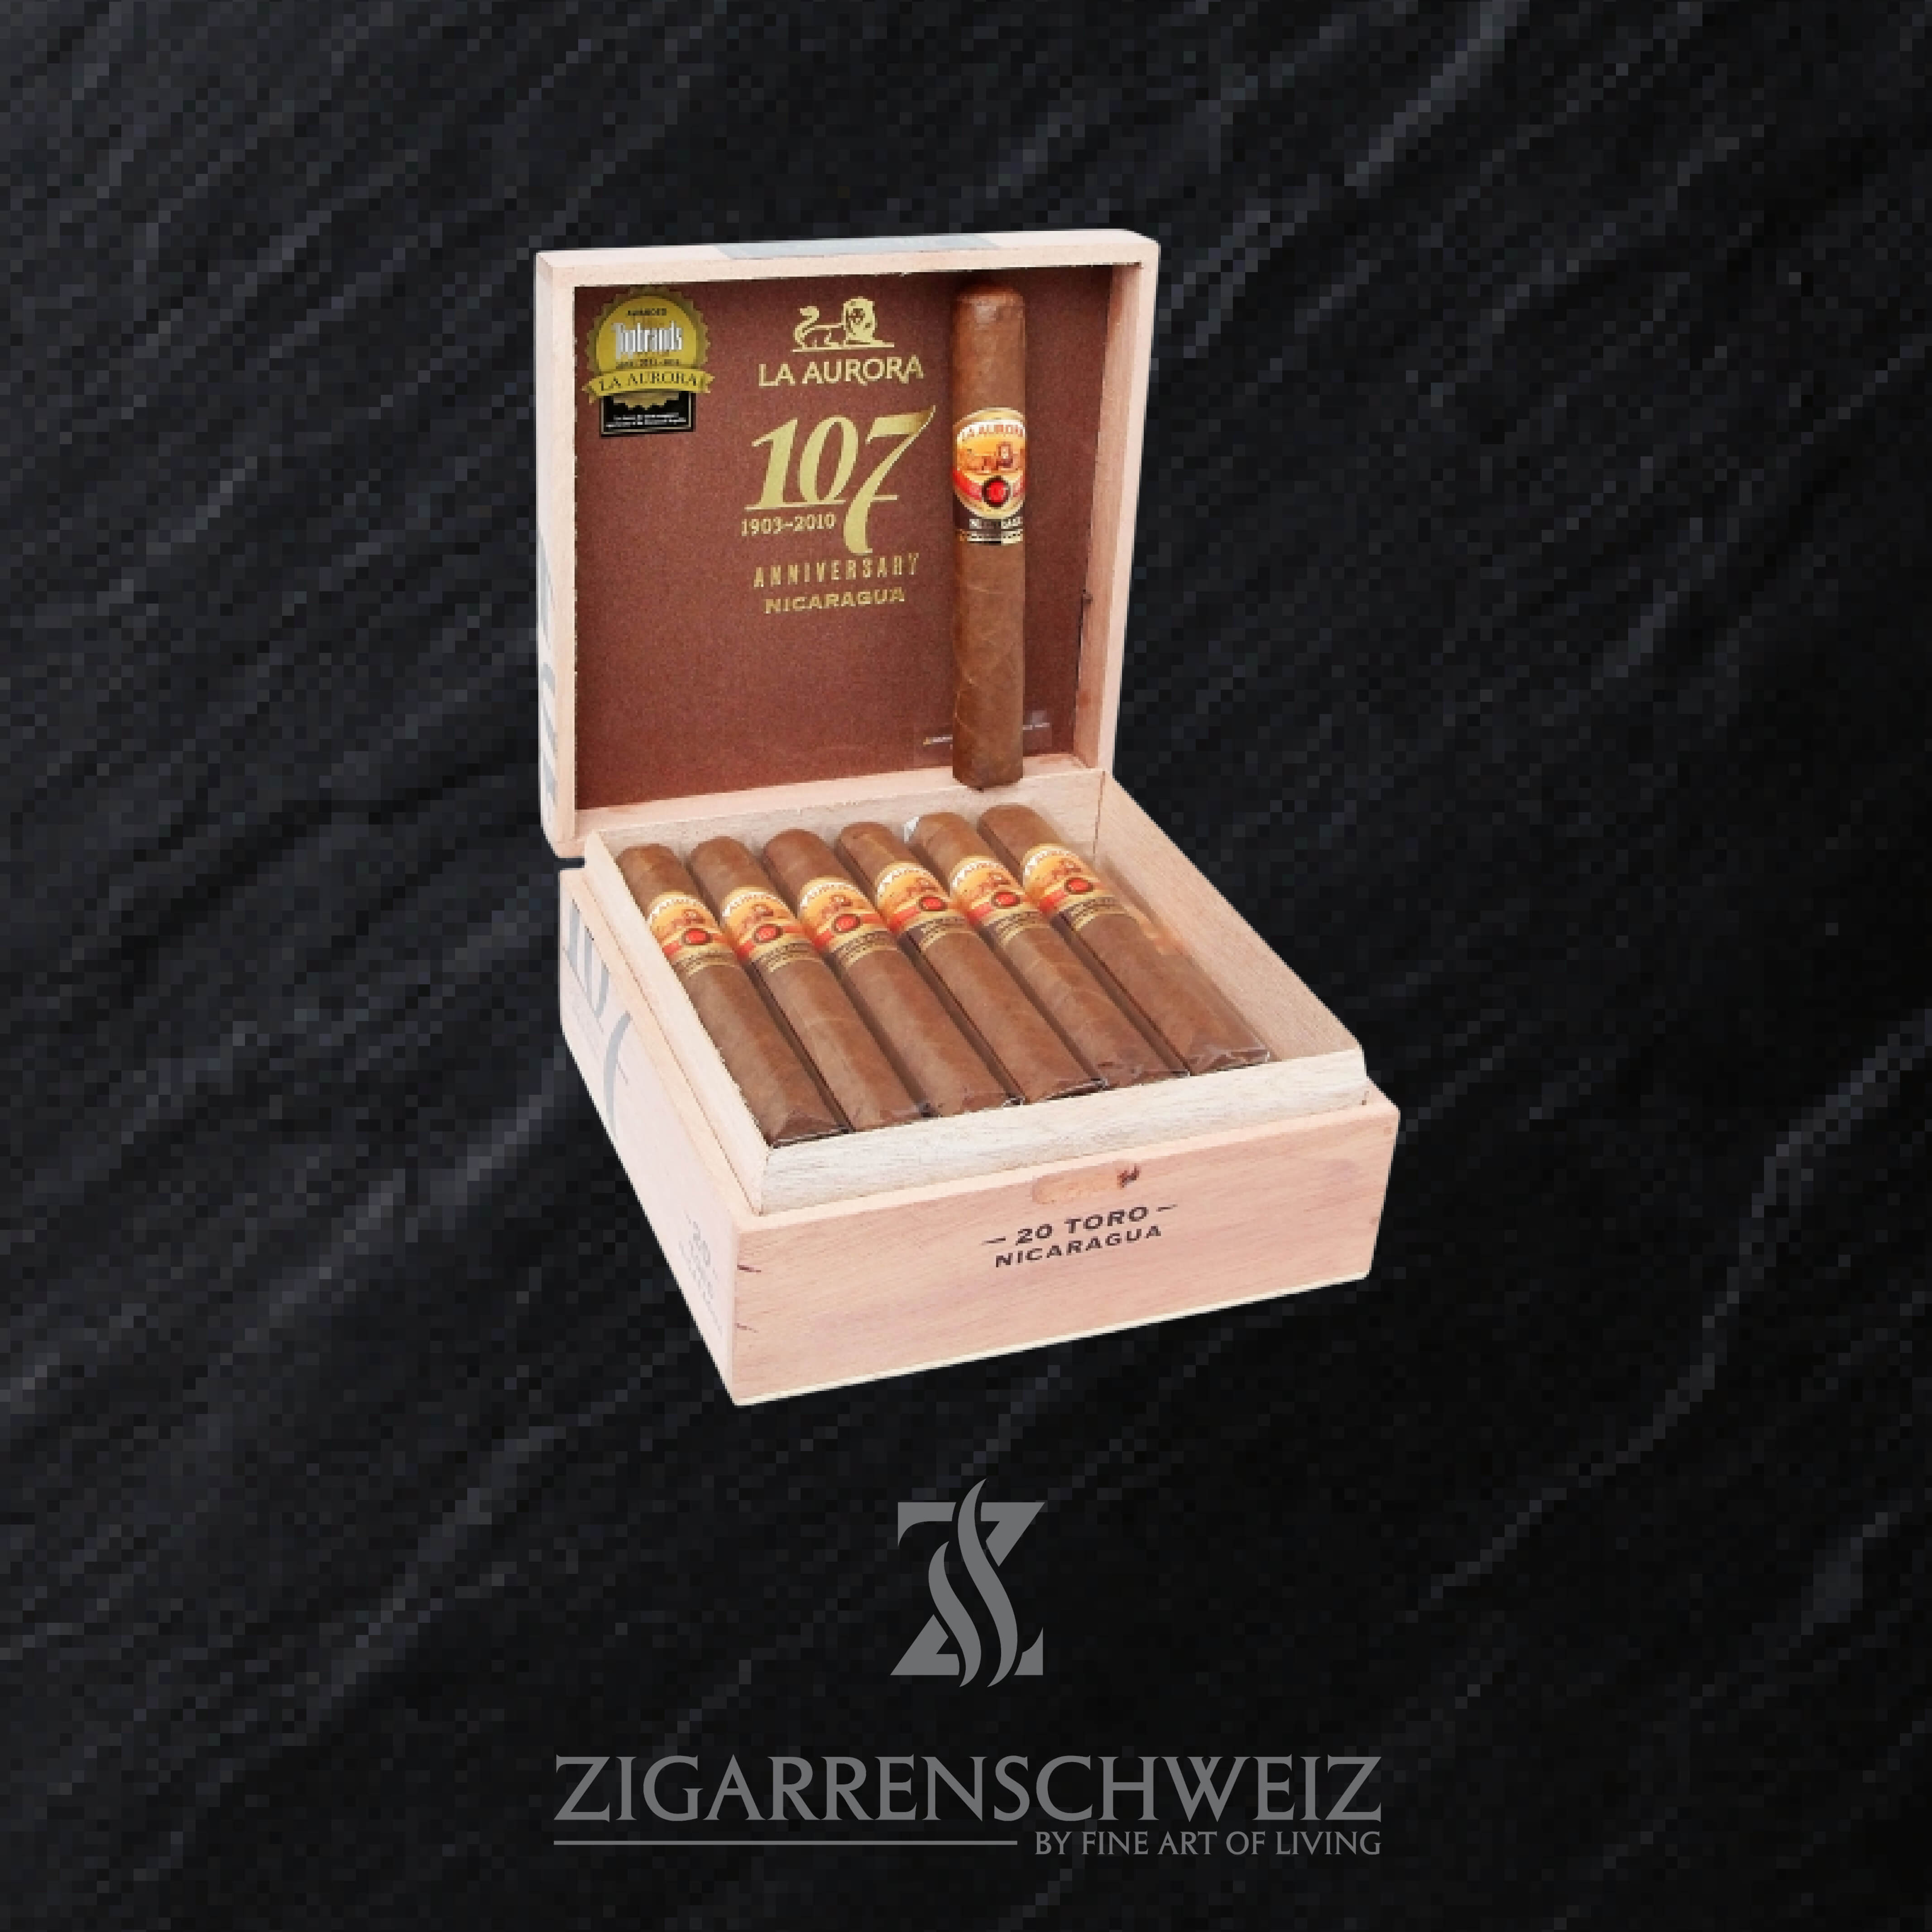 La Aurora 107 Nicaragua Toro Zigarren Kiste  geöffnet